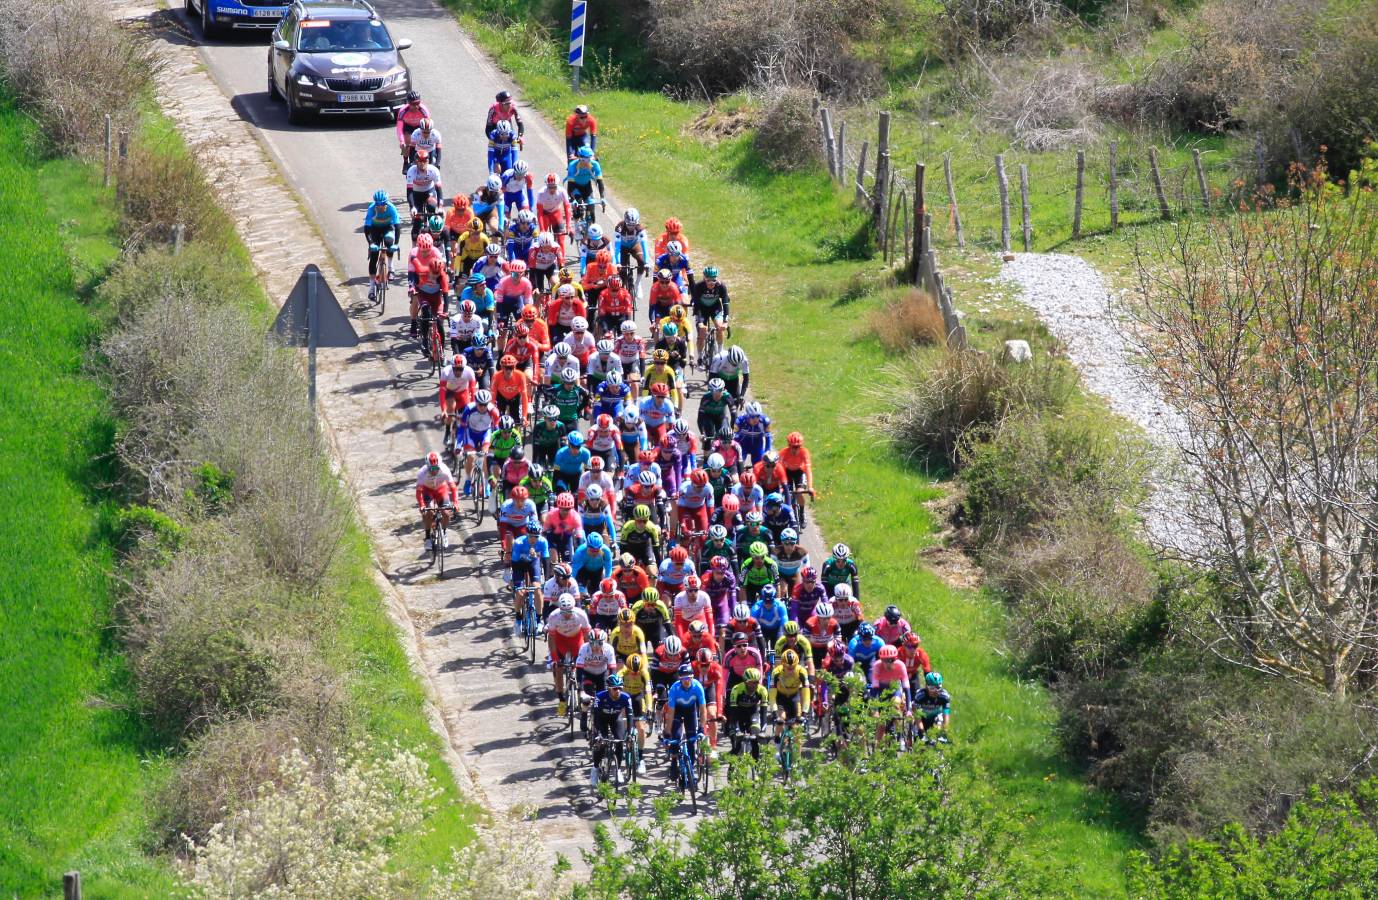 La tercera etapa de la Itzulia 2019 Vuelta al País Vasco en imágenes.